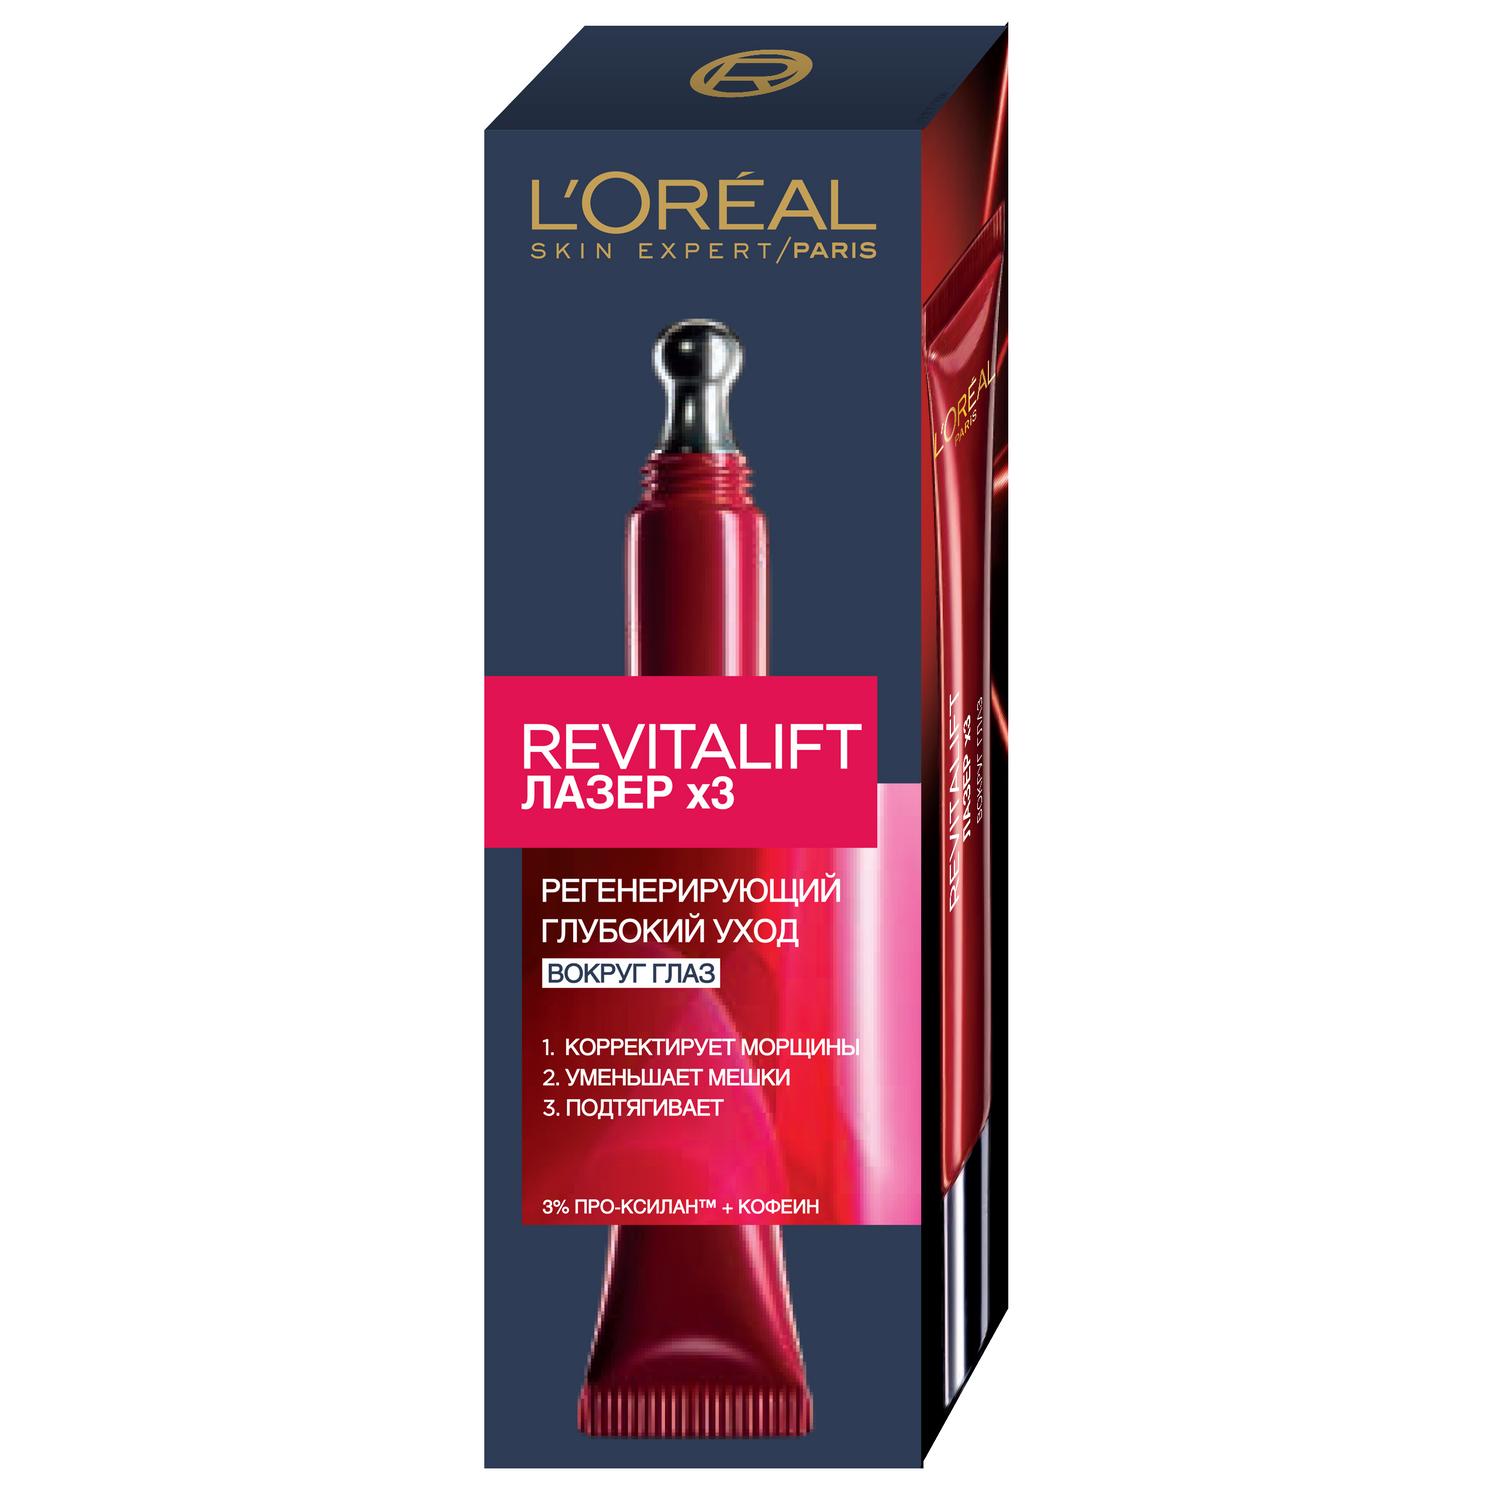 Сыворотка L’Oréal Revitalift Лазер х3 30мл (A6672200) лифтинг сыворотка для лица и шеи с золотыми нитями 30мл